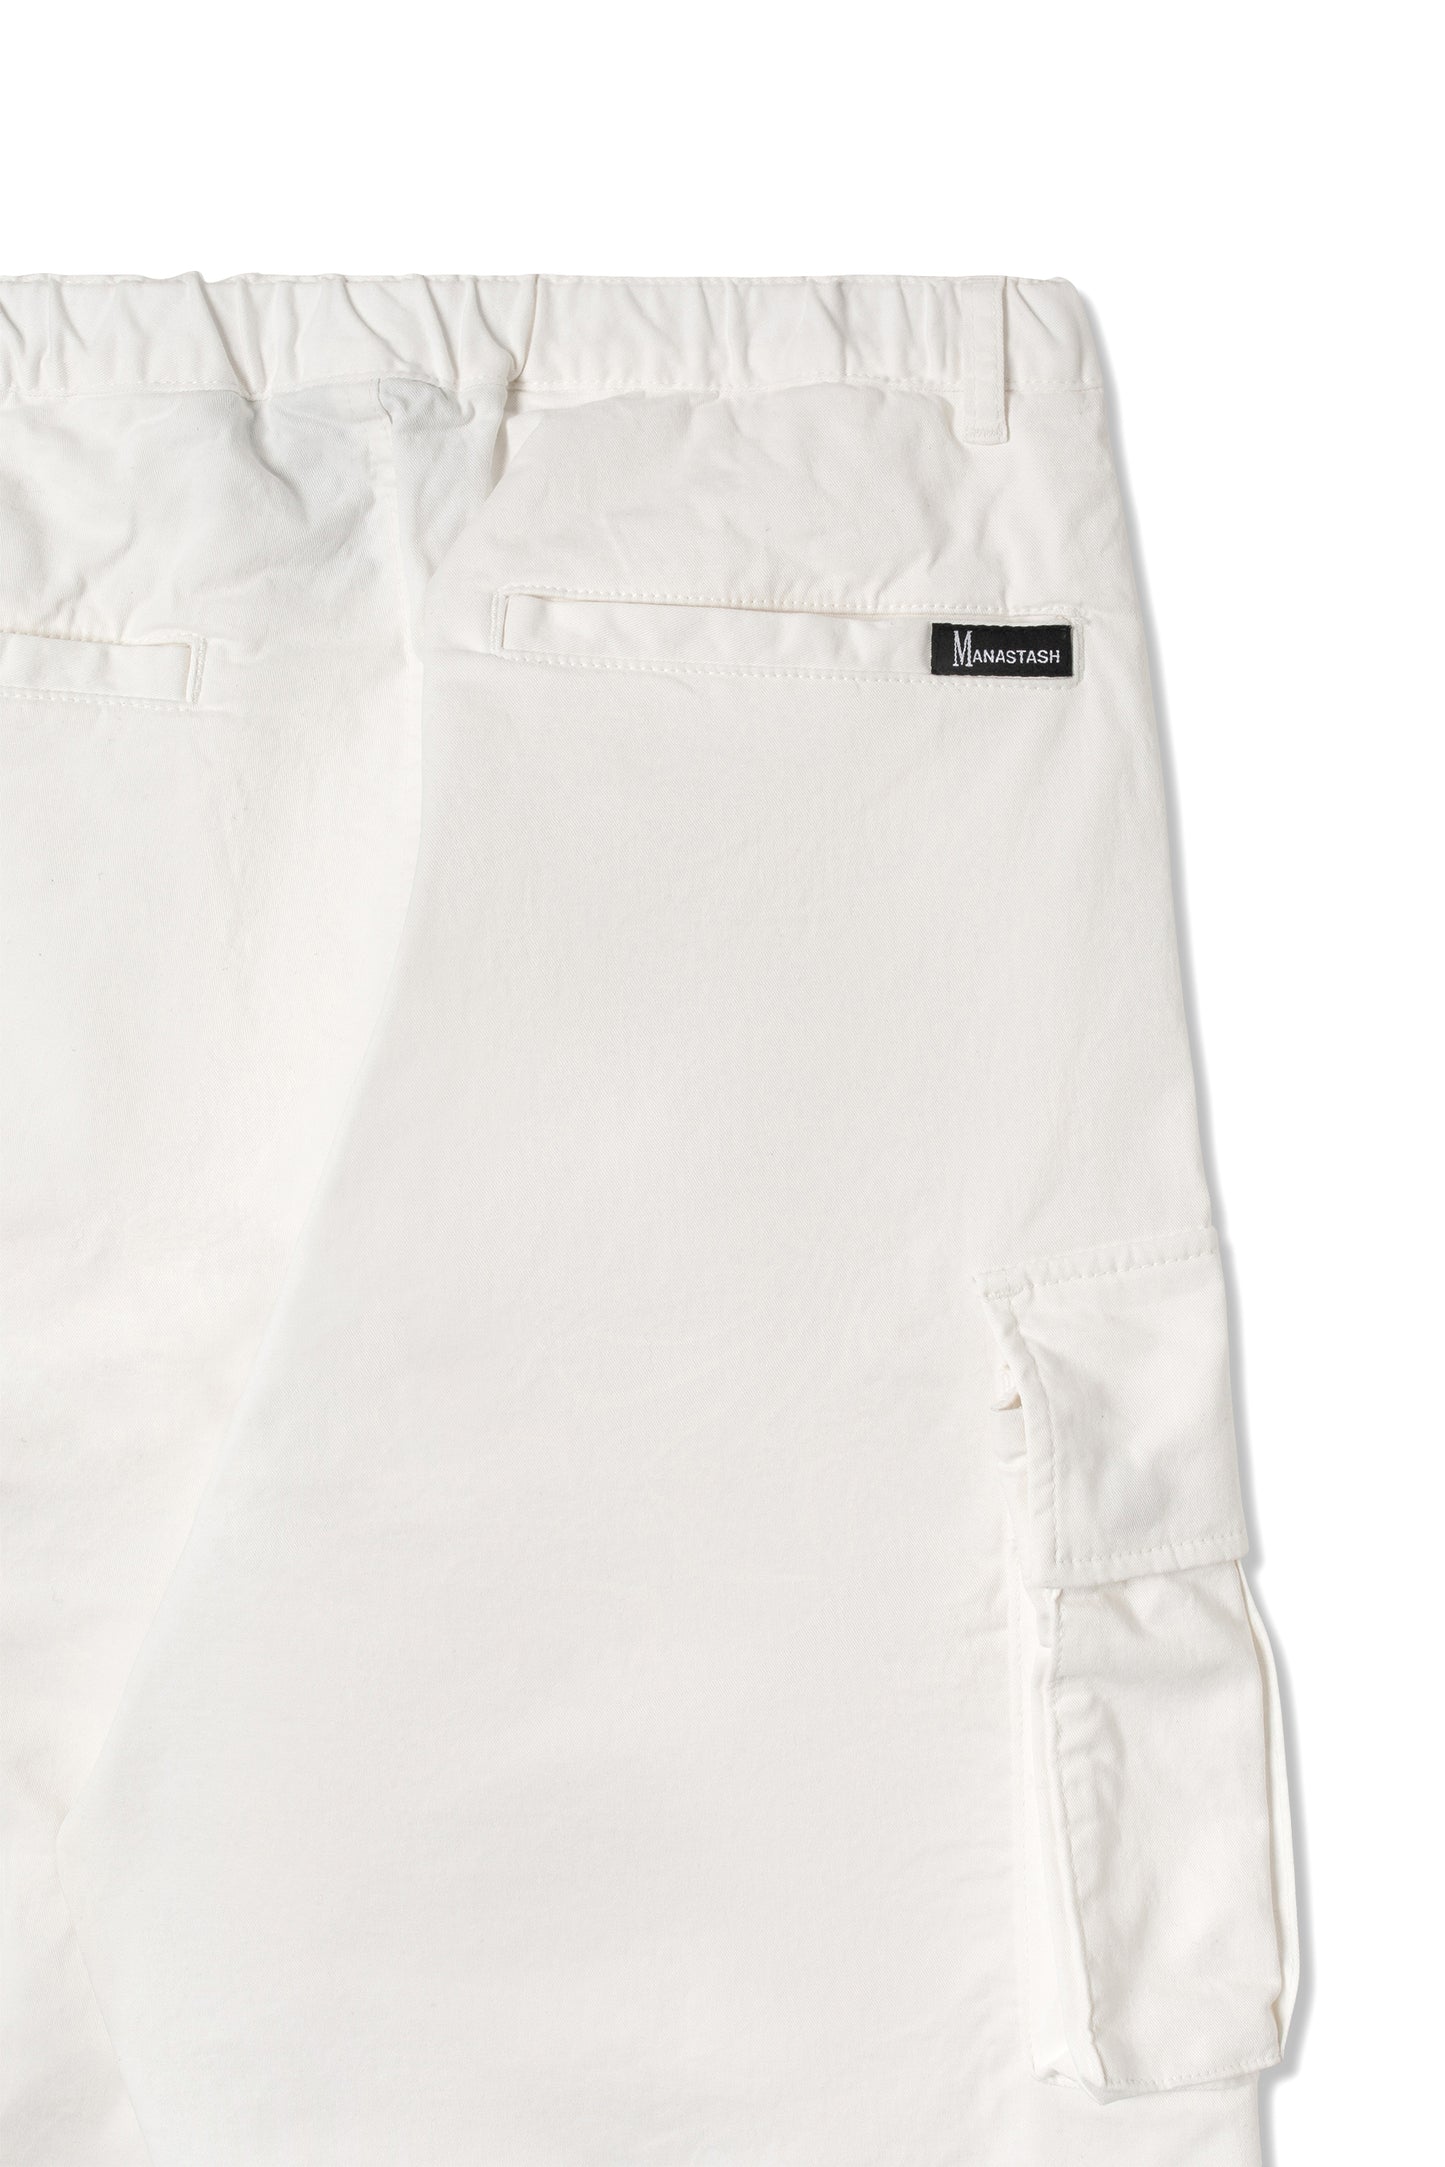 Flex Climber Cargo Pant (Off White)